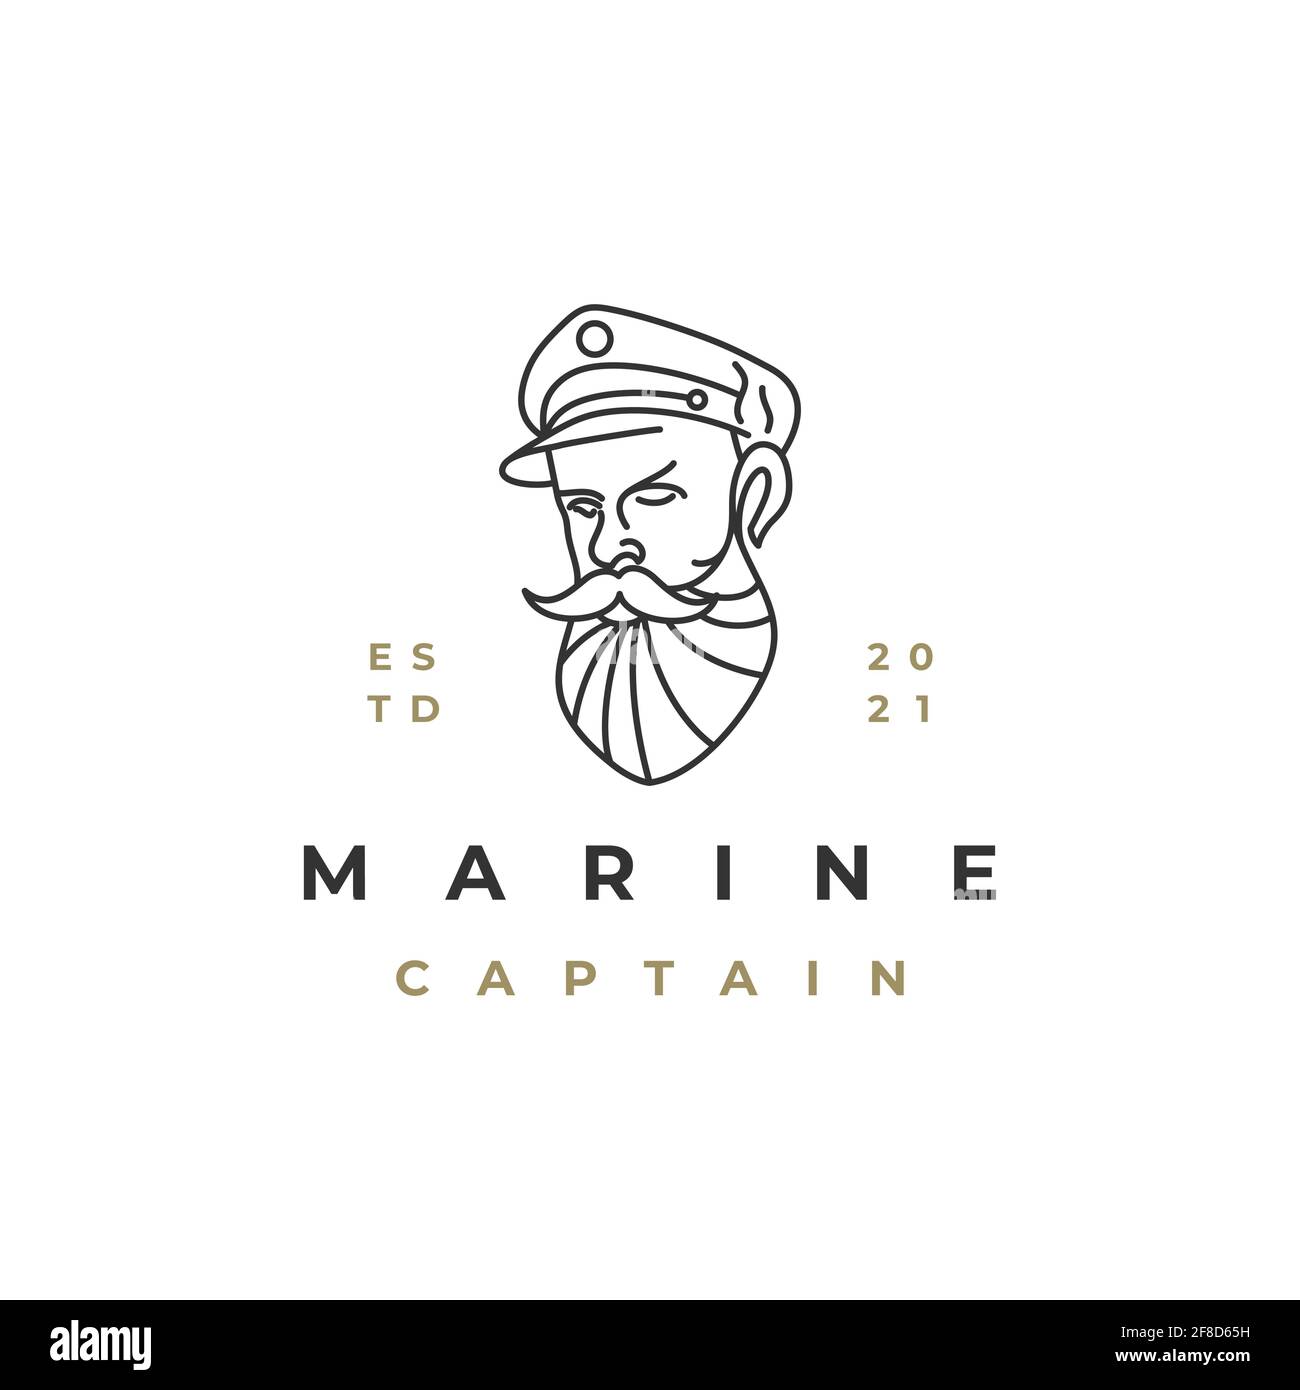 Sailor, Line art ship captain logo design vector Stock Vector